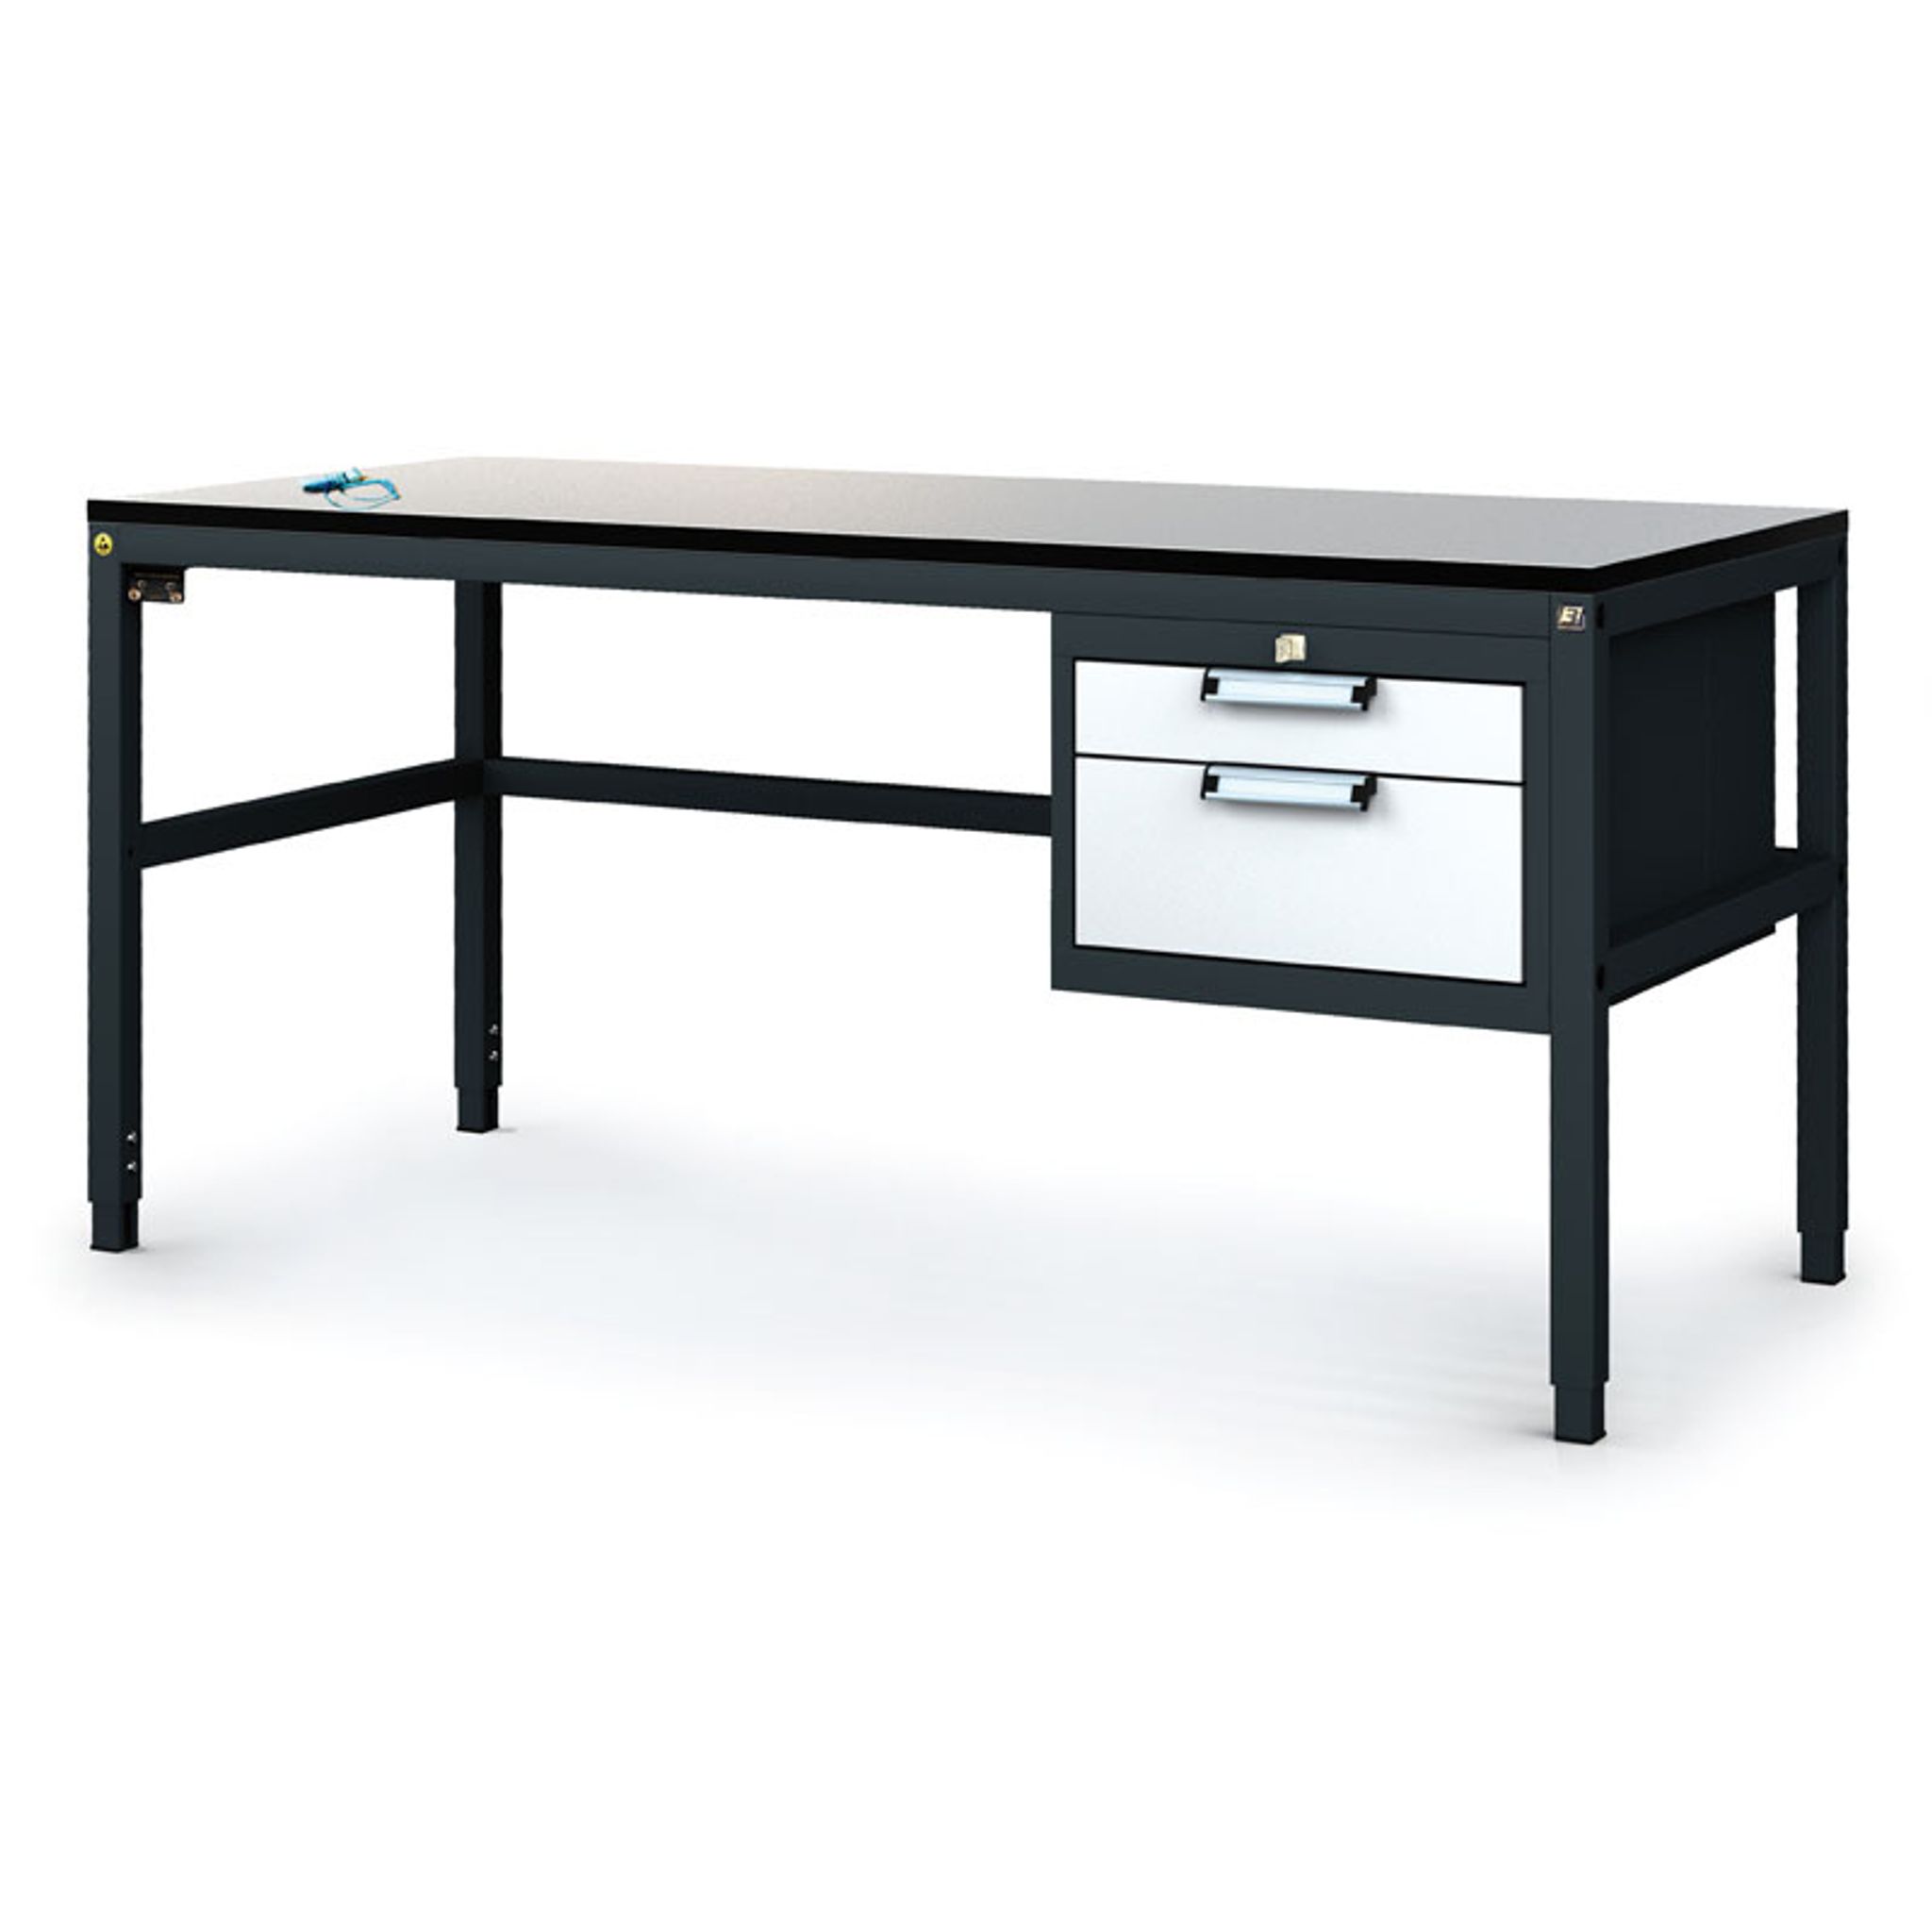 Antystatyczny stół warsztatowy ESD, 2 skrzynka szufladowa na narzędzia, 1600 x 800 x 745-985 mm